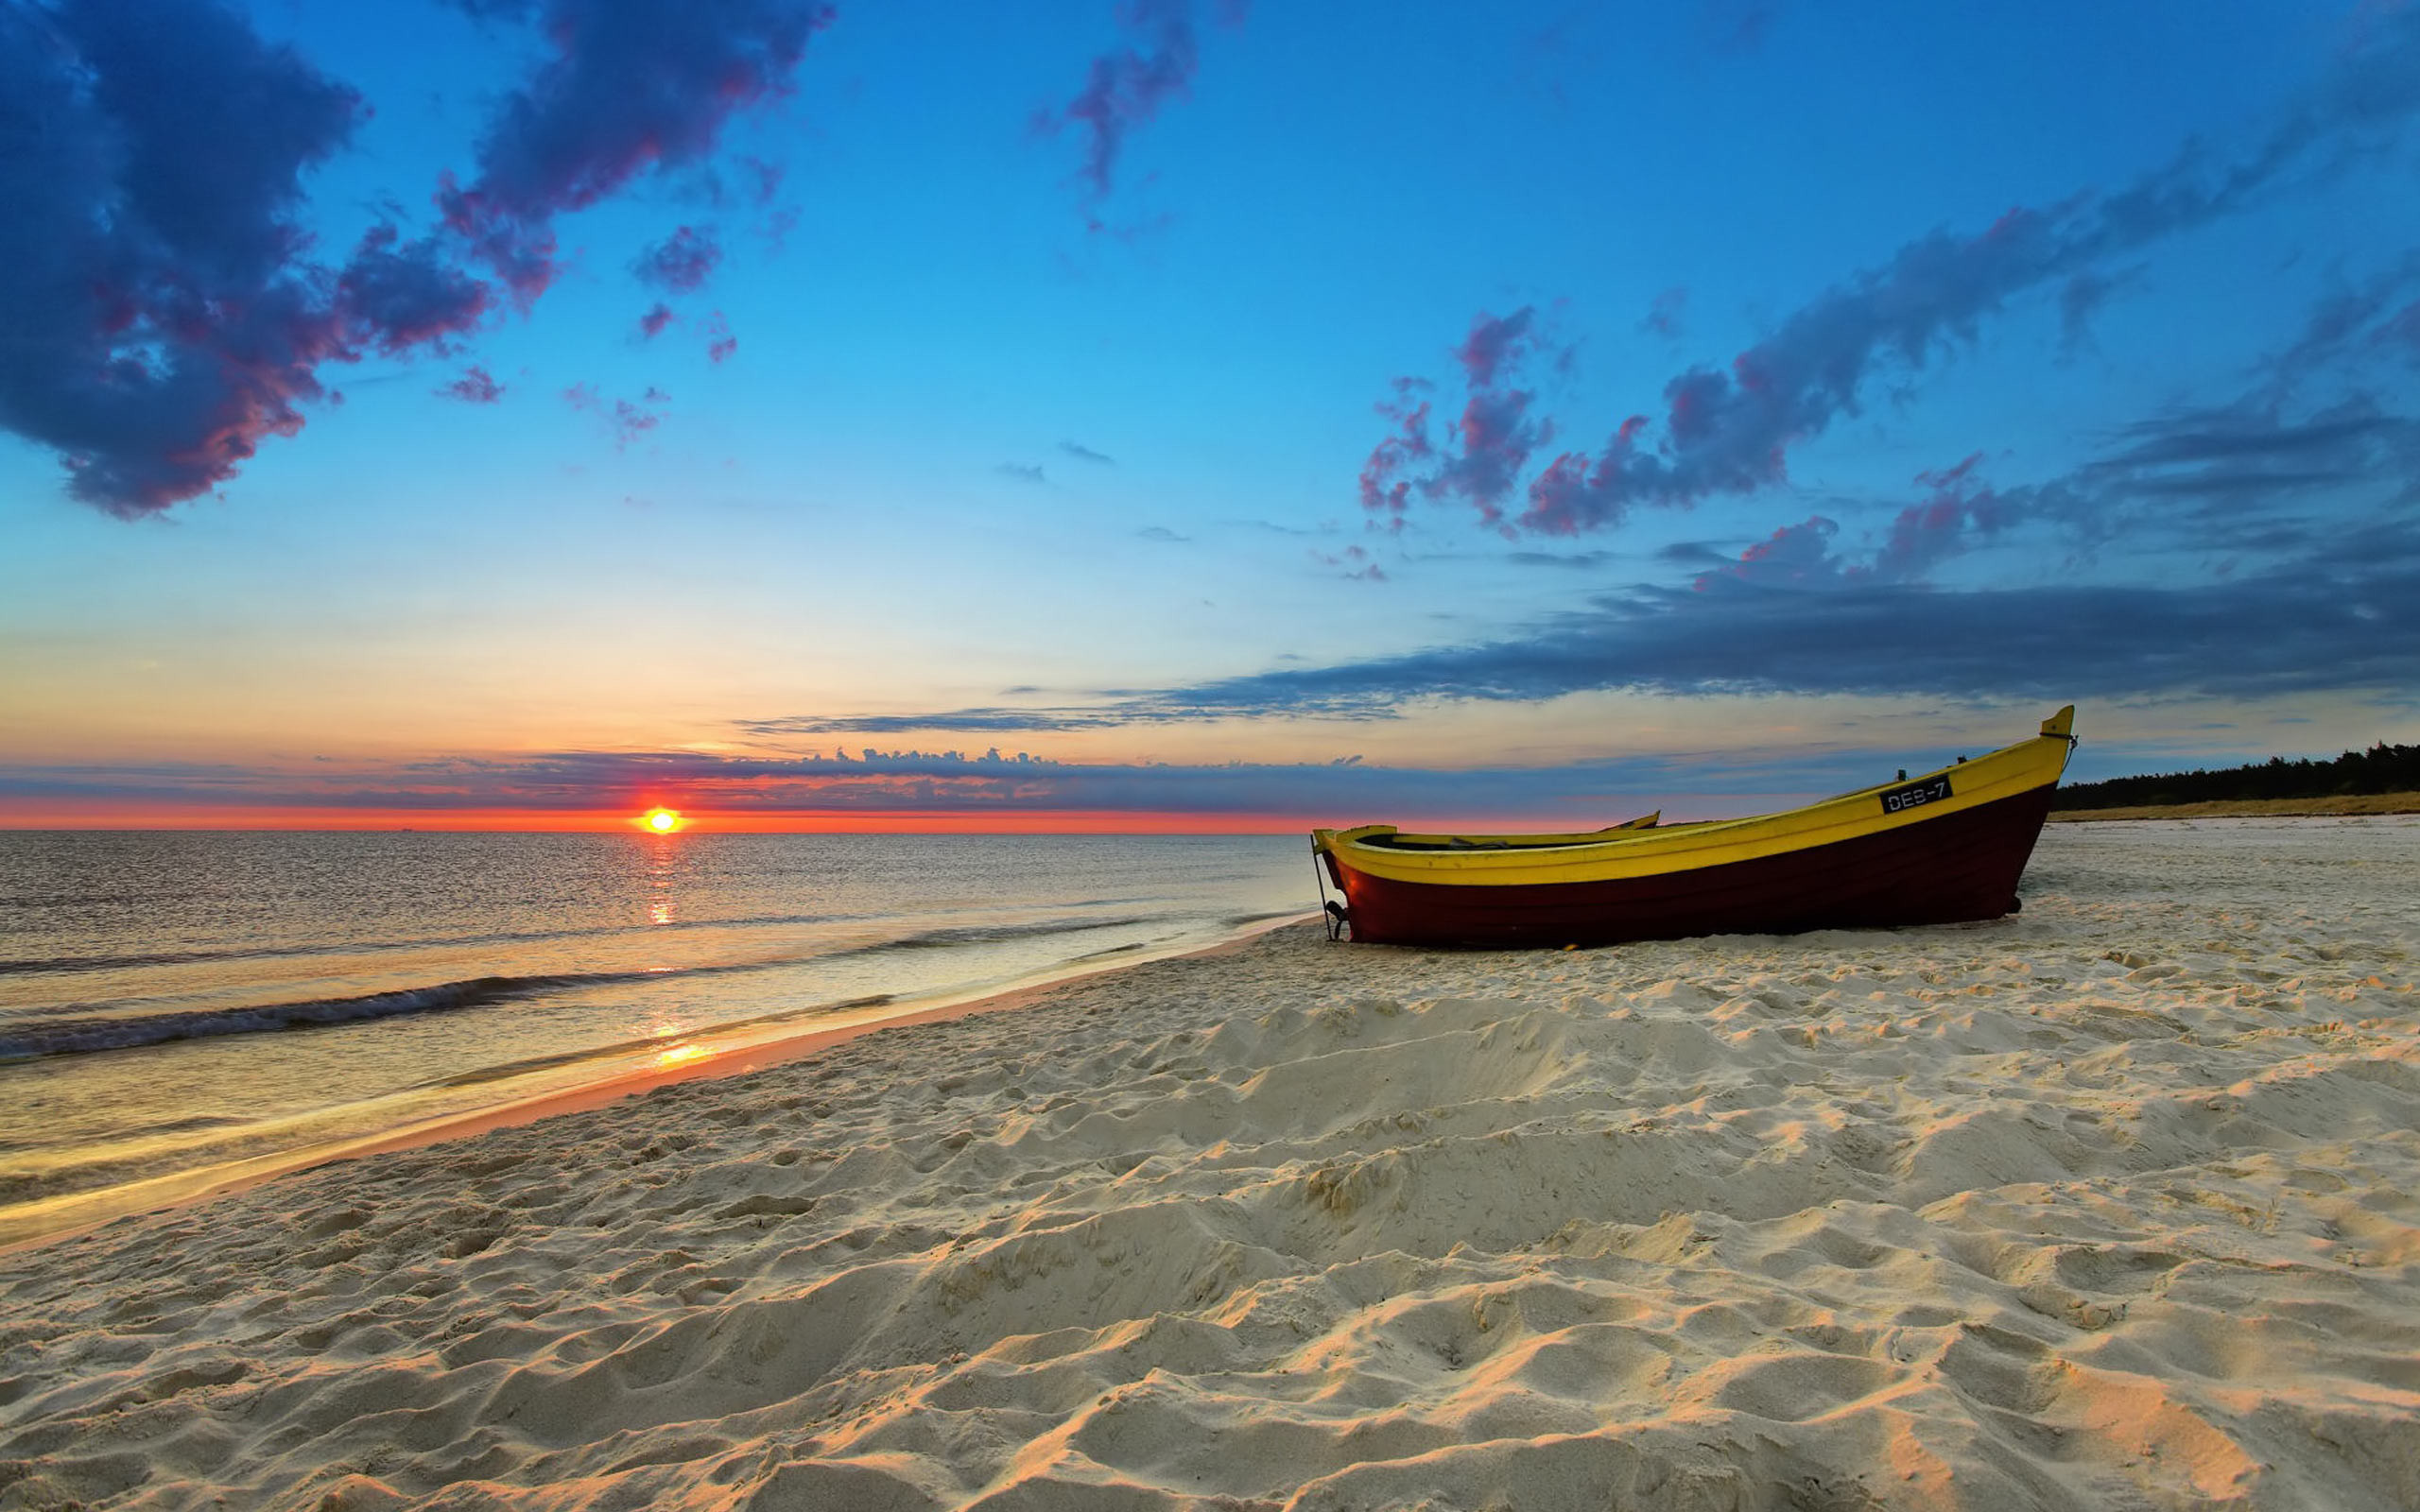 2560x1600 Sunset Beach HD Wallpapers | Beach sunset Desktop Images |